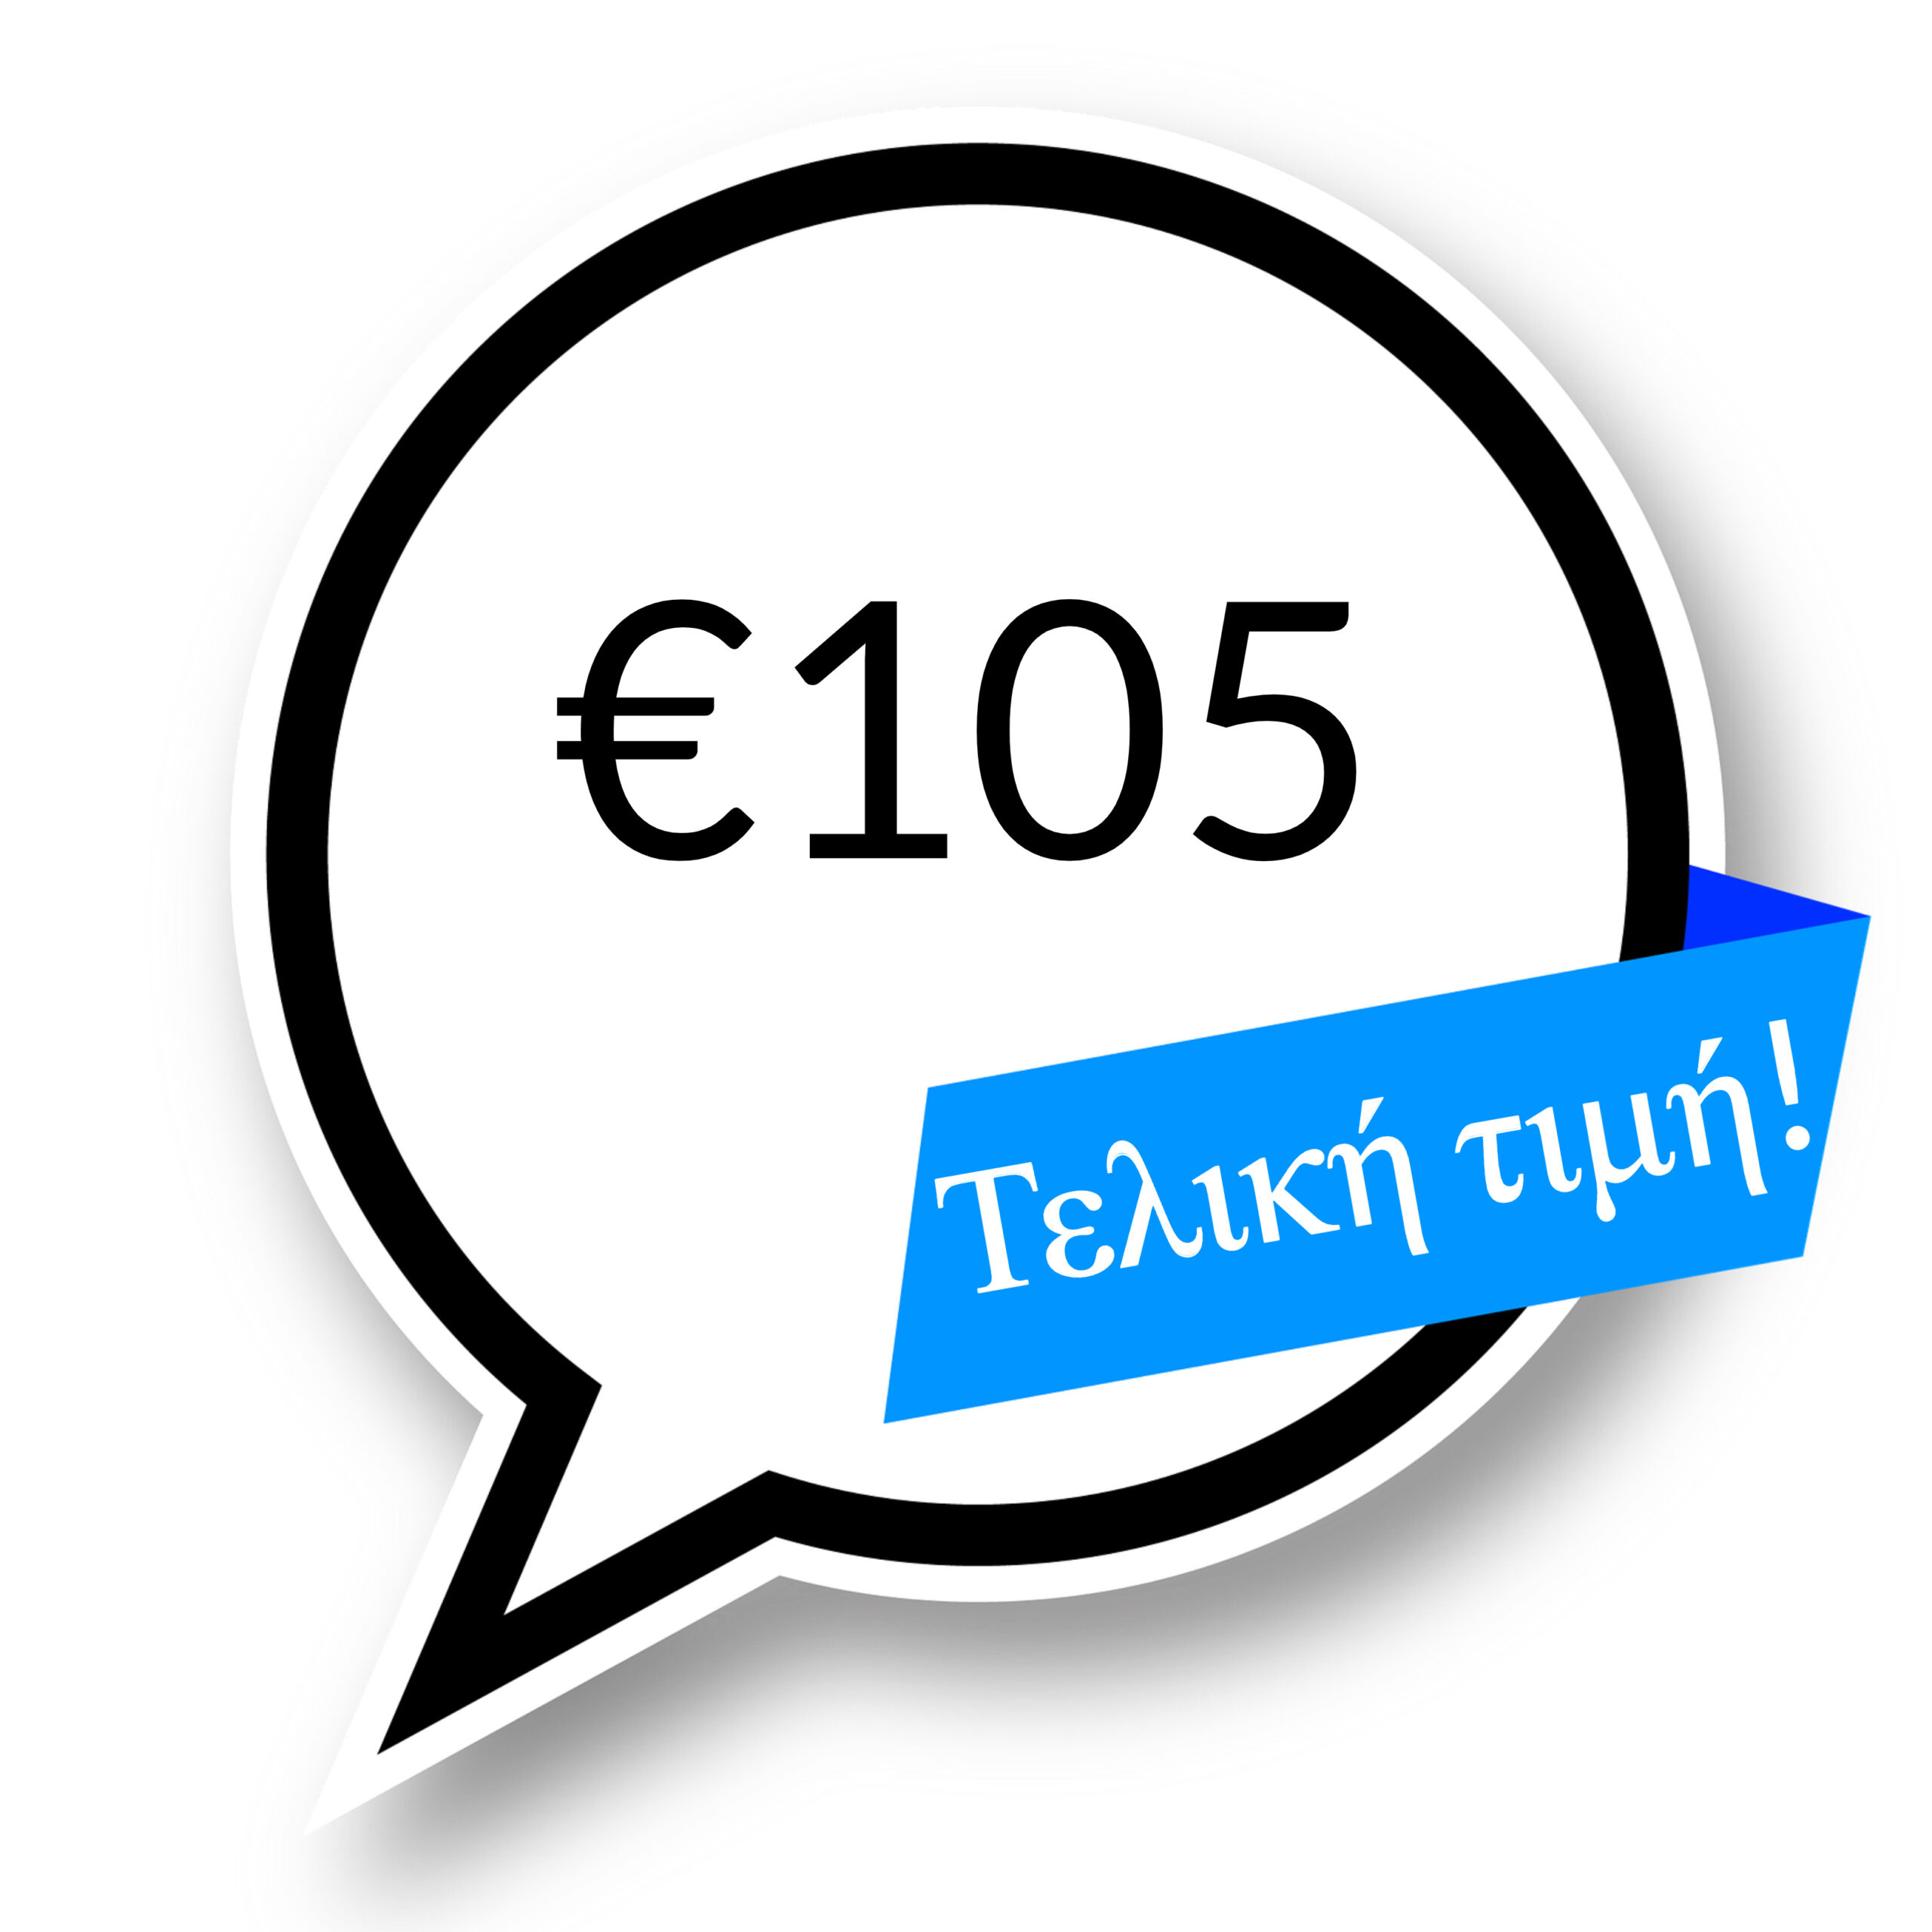 €105-teliki-timi